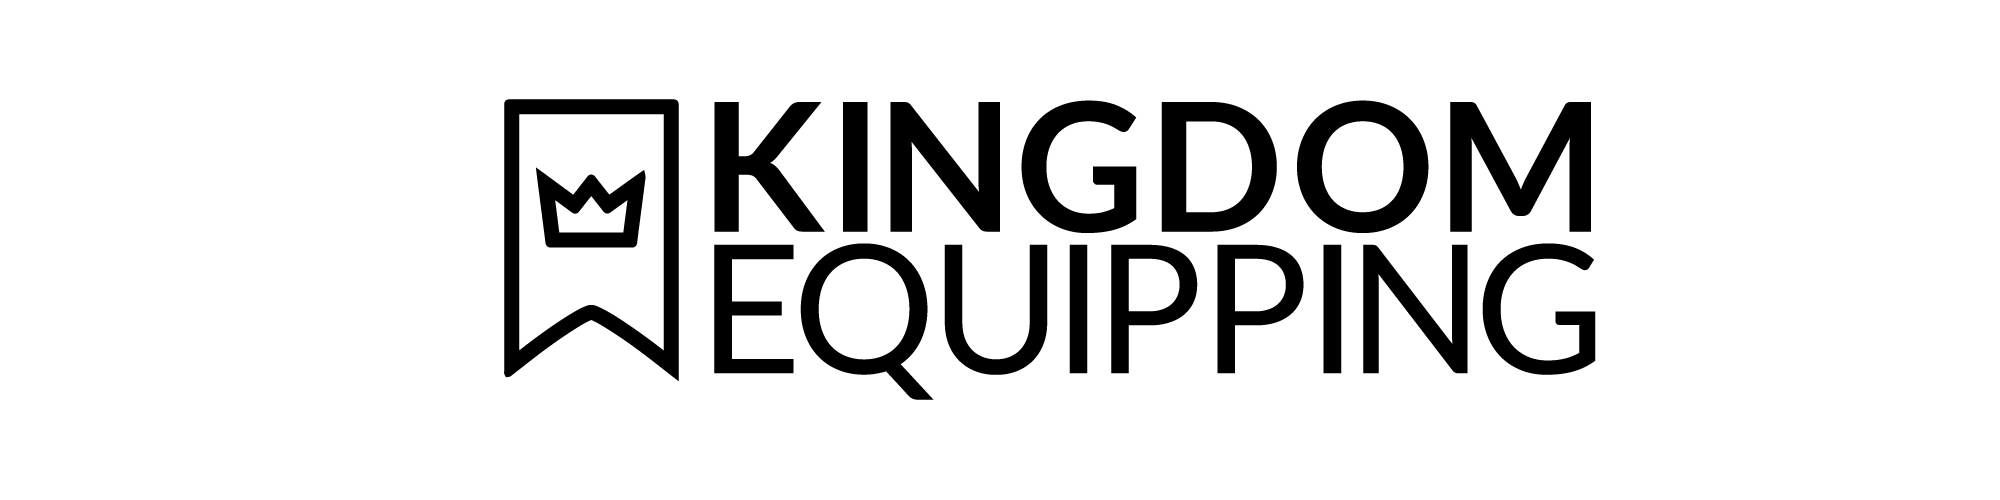 SoKM 2012-2013 | Kingdom Equipping